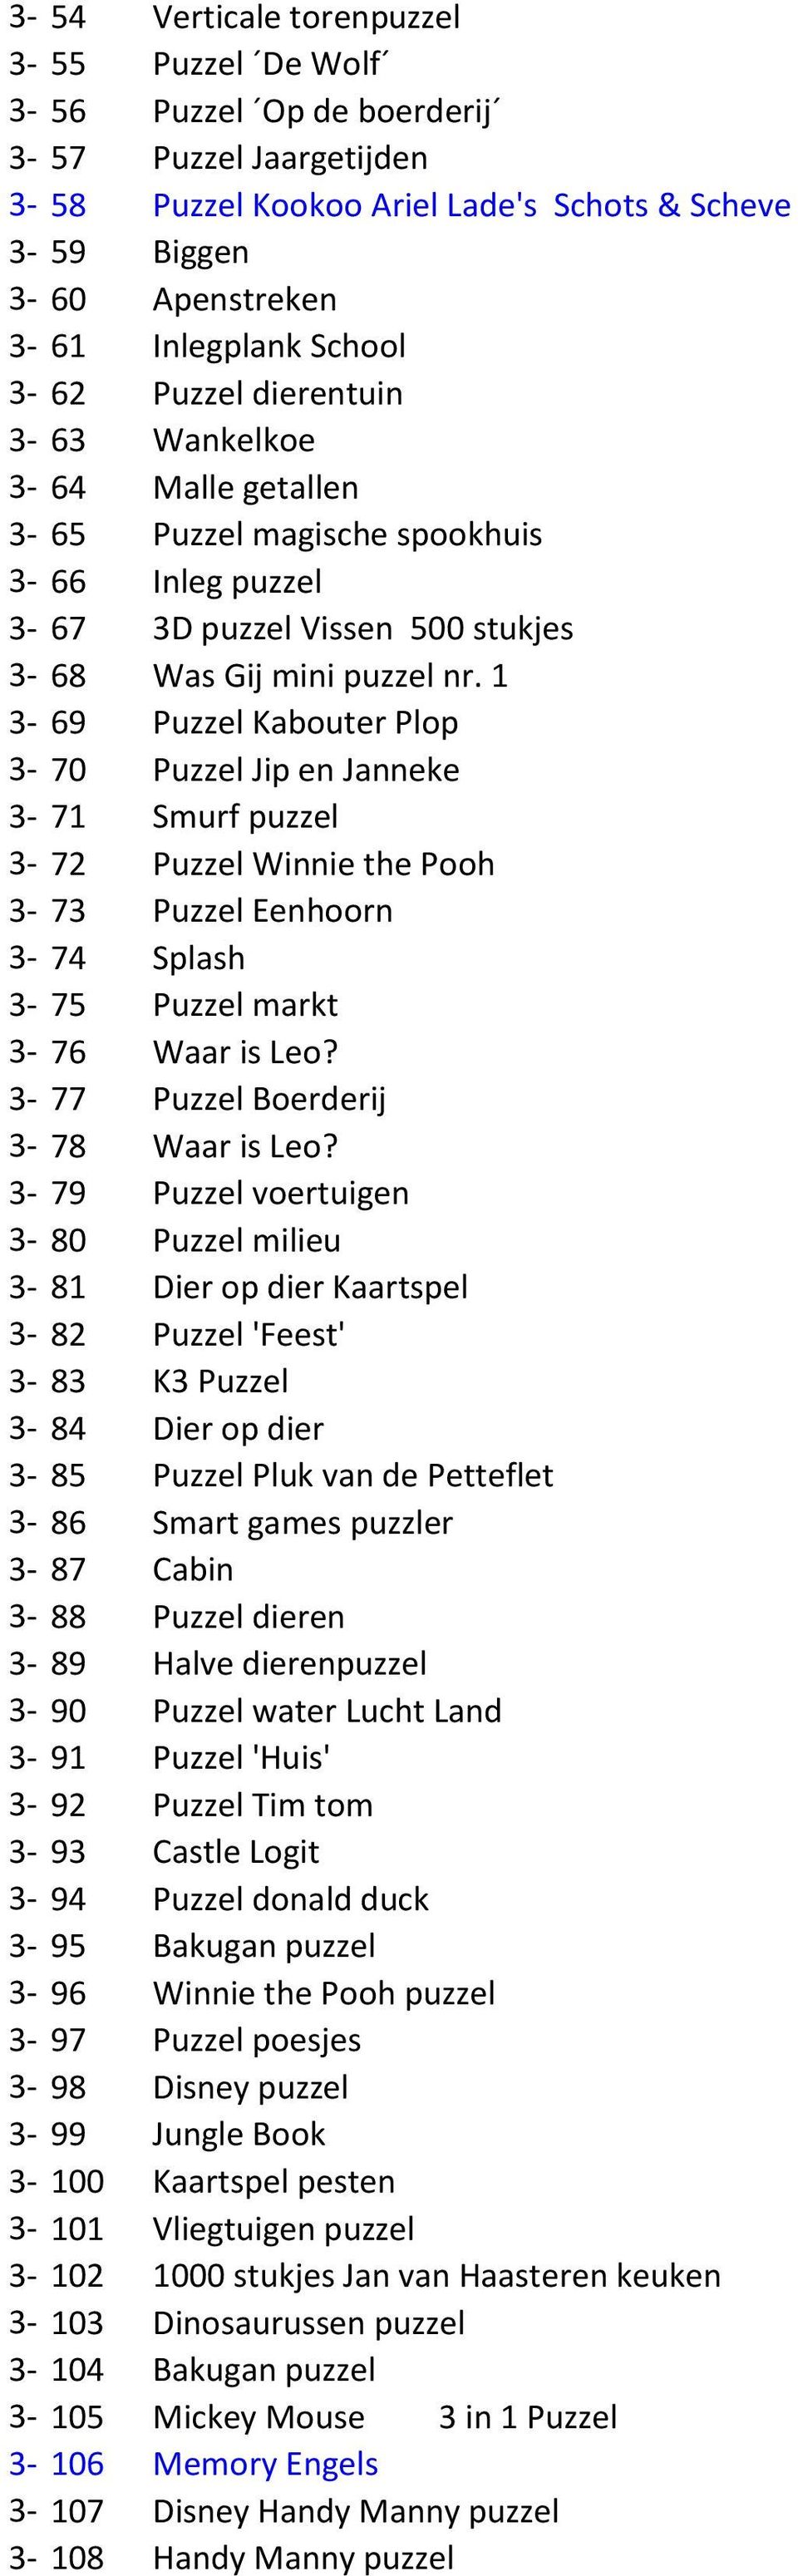 1 3-69 Puzzel Kabouter Plop 3-70 Puzzel Jip en Janneke 3-71 Smurf puzzel 3-72 Puzzel Winnie the Pooh 3-73 Puzzel Eenhoorn 3-74 Splash 3-75 Puzzel markt 3-76 Waar is Leo?